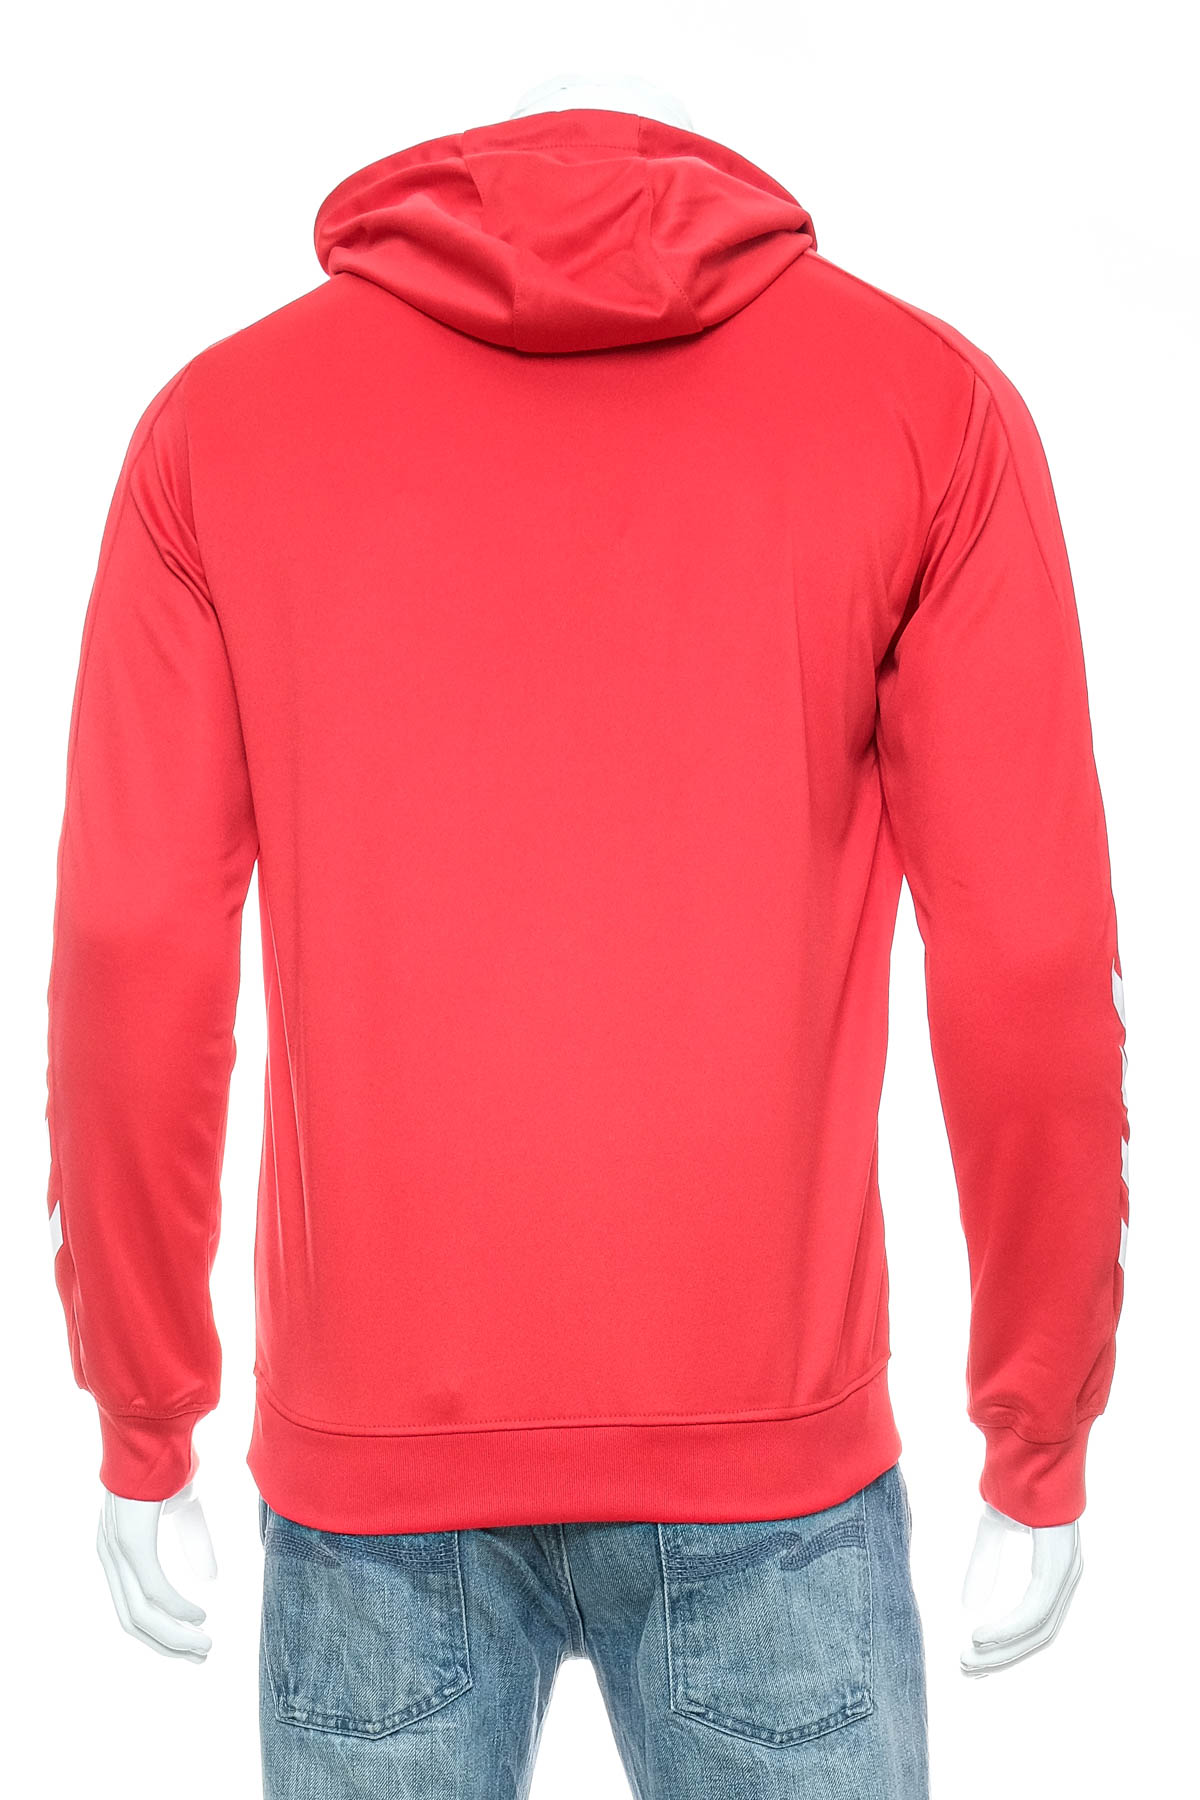 Men's sweatshirt - Hummel - 1